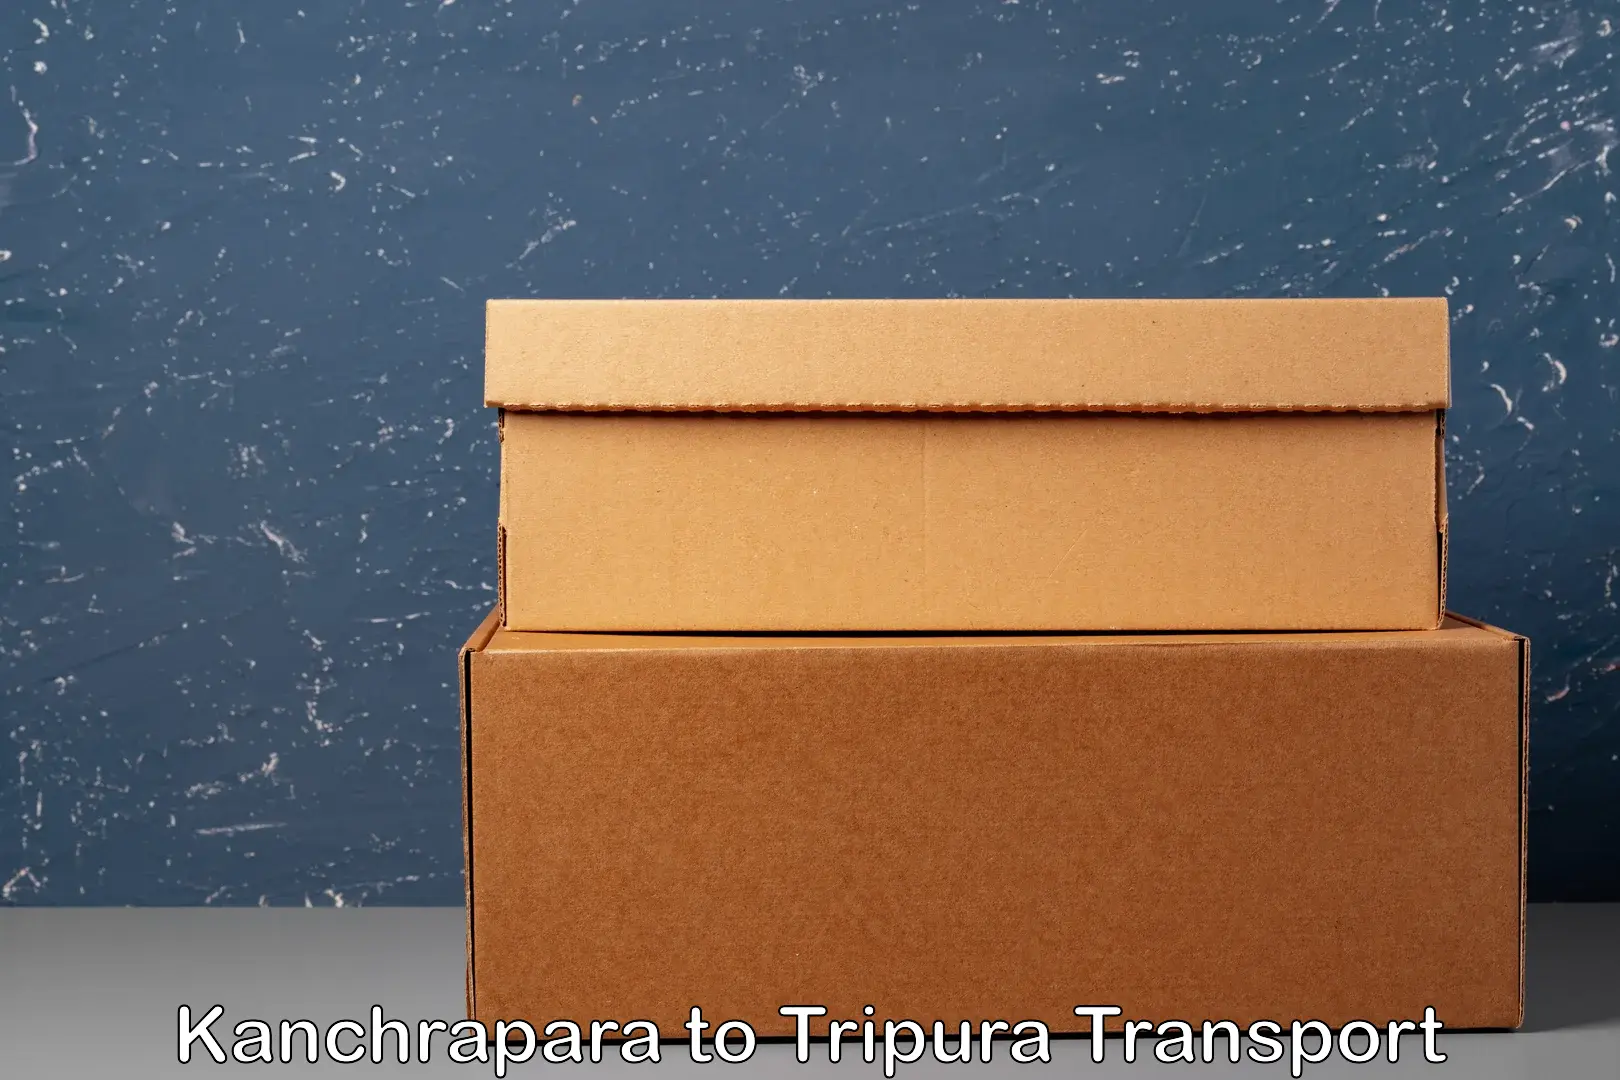 Furniture transport service Kanchrapara to Manughat